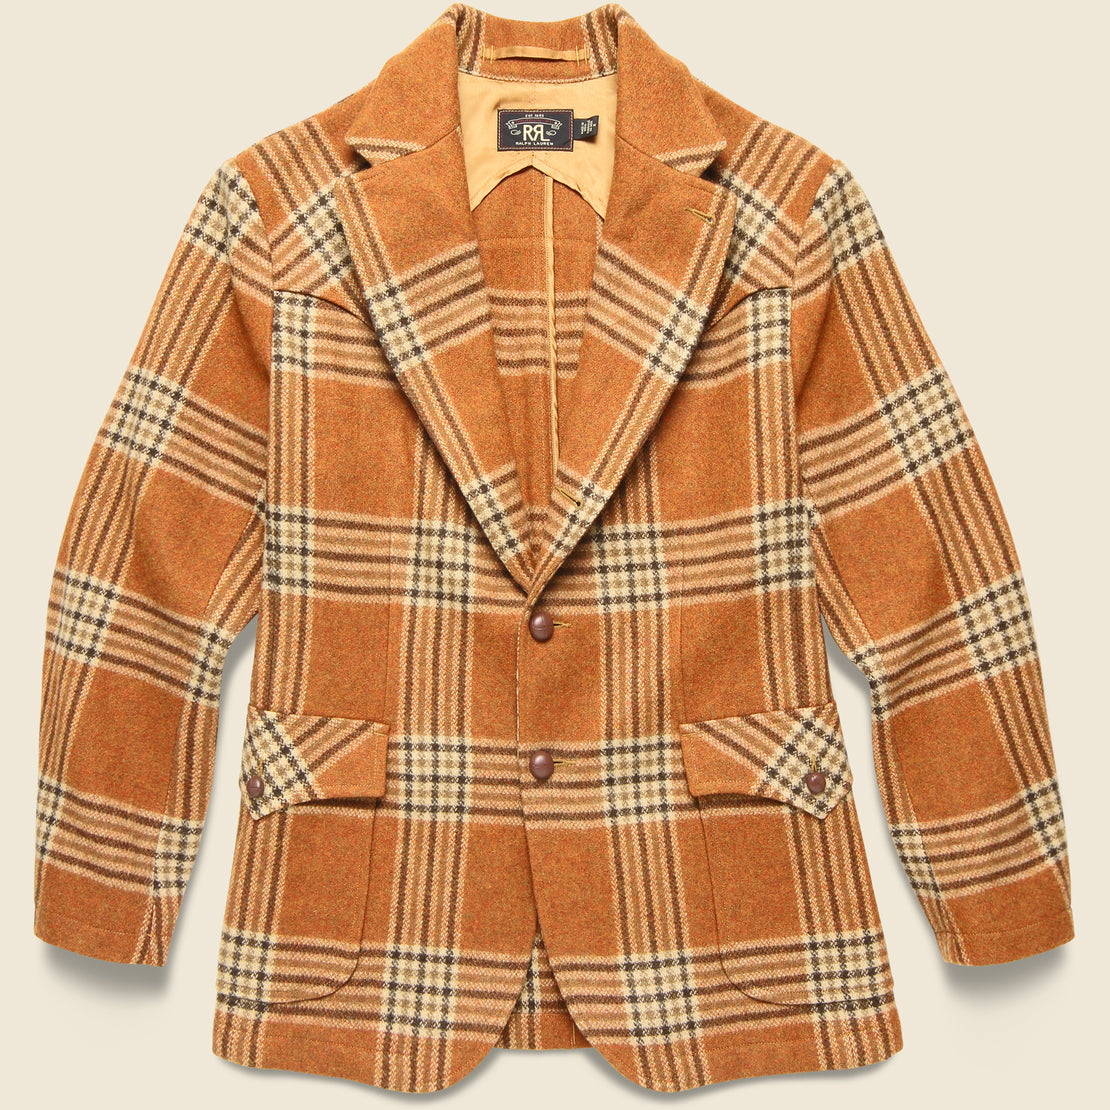 RRL Callington Wool Jacket - Orange/Tan Plaid